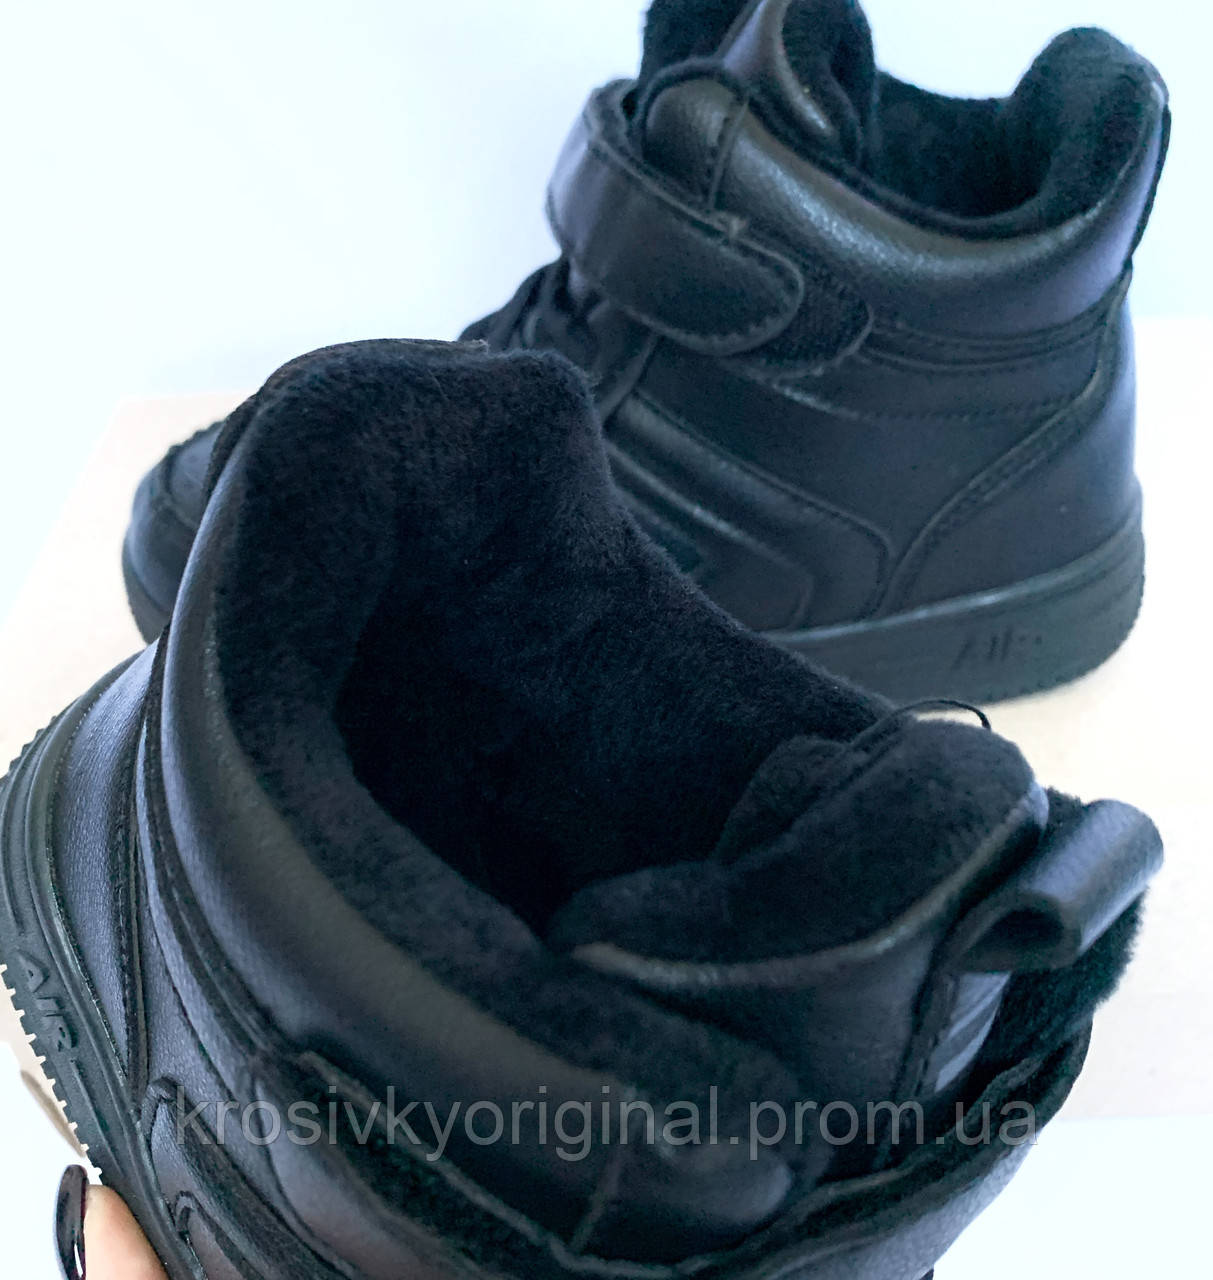 

Зимние кроссовки высокие подростковые на меху в стиле Nike Air Jordan 1 размеры 33,34,35,36,37,38 22.5